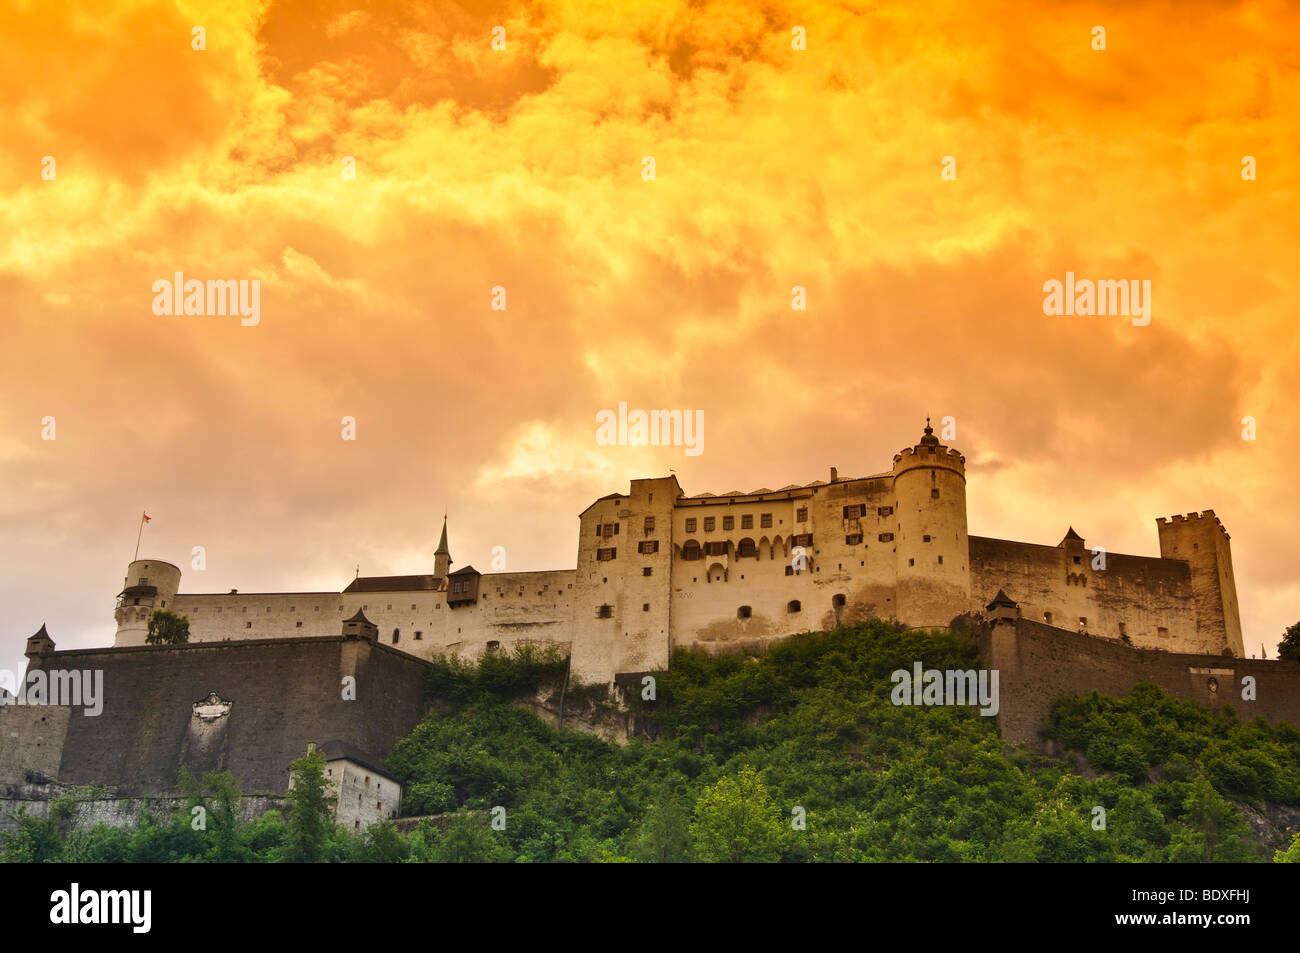 Festung Hohensalzburg castle in Salzburg, Austria Stock Photo